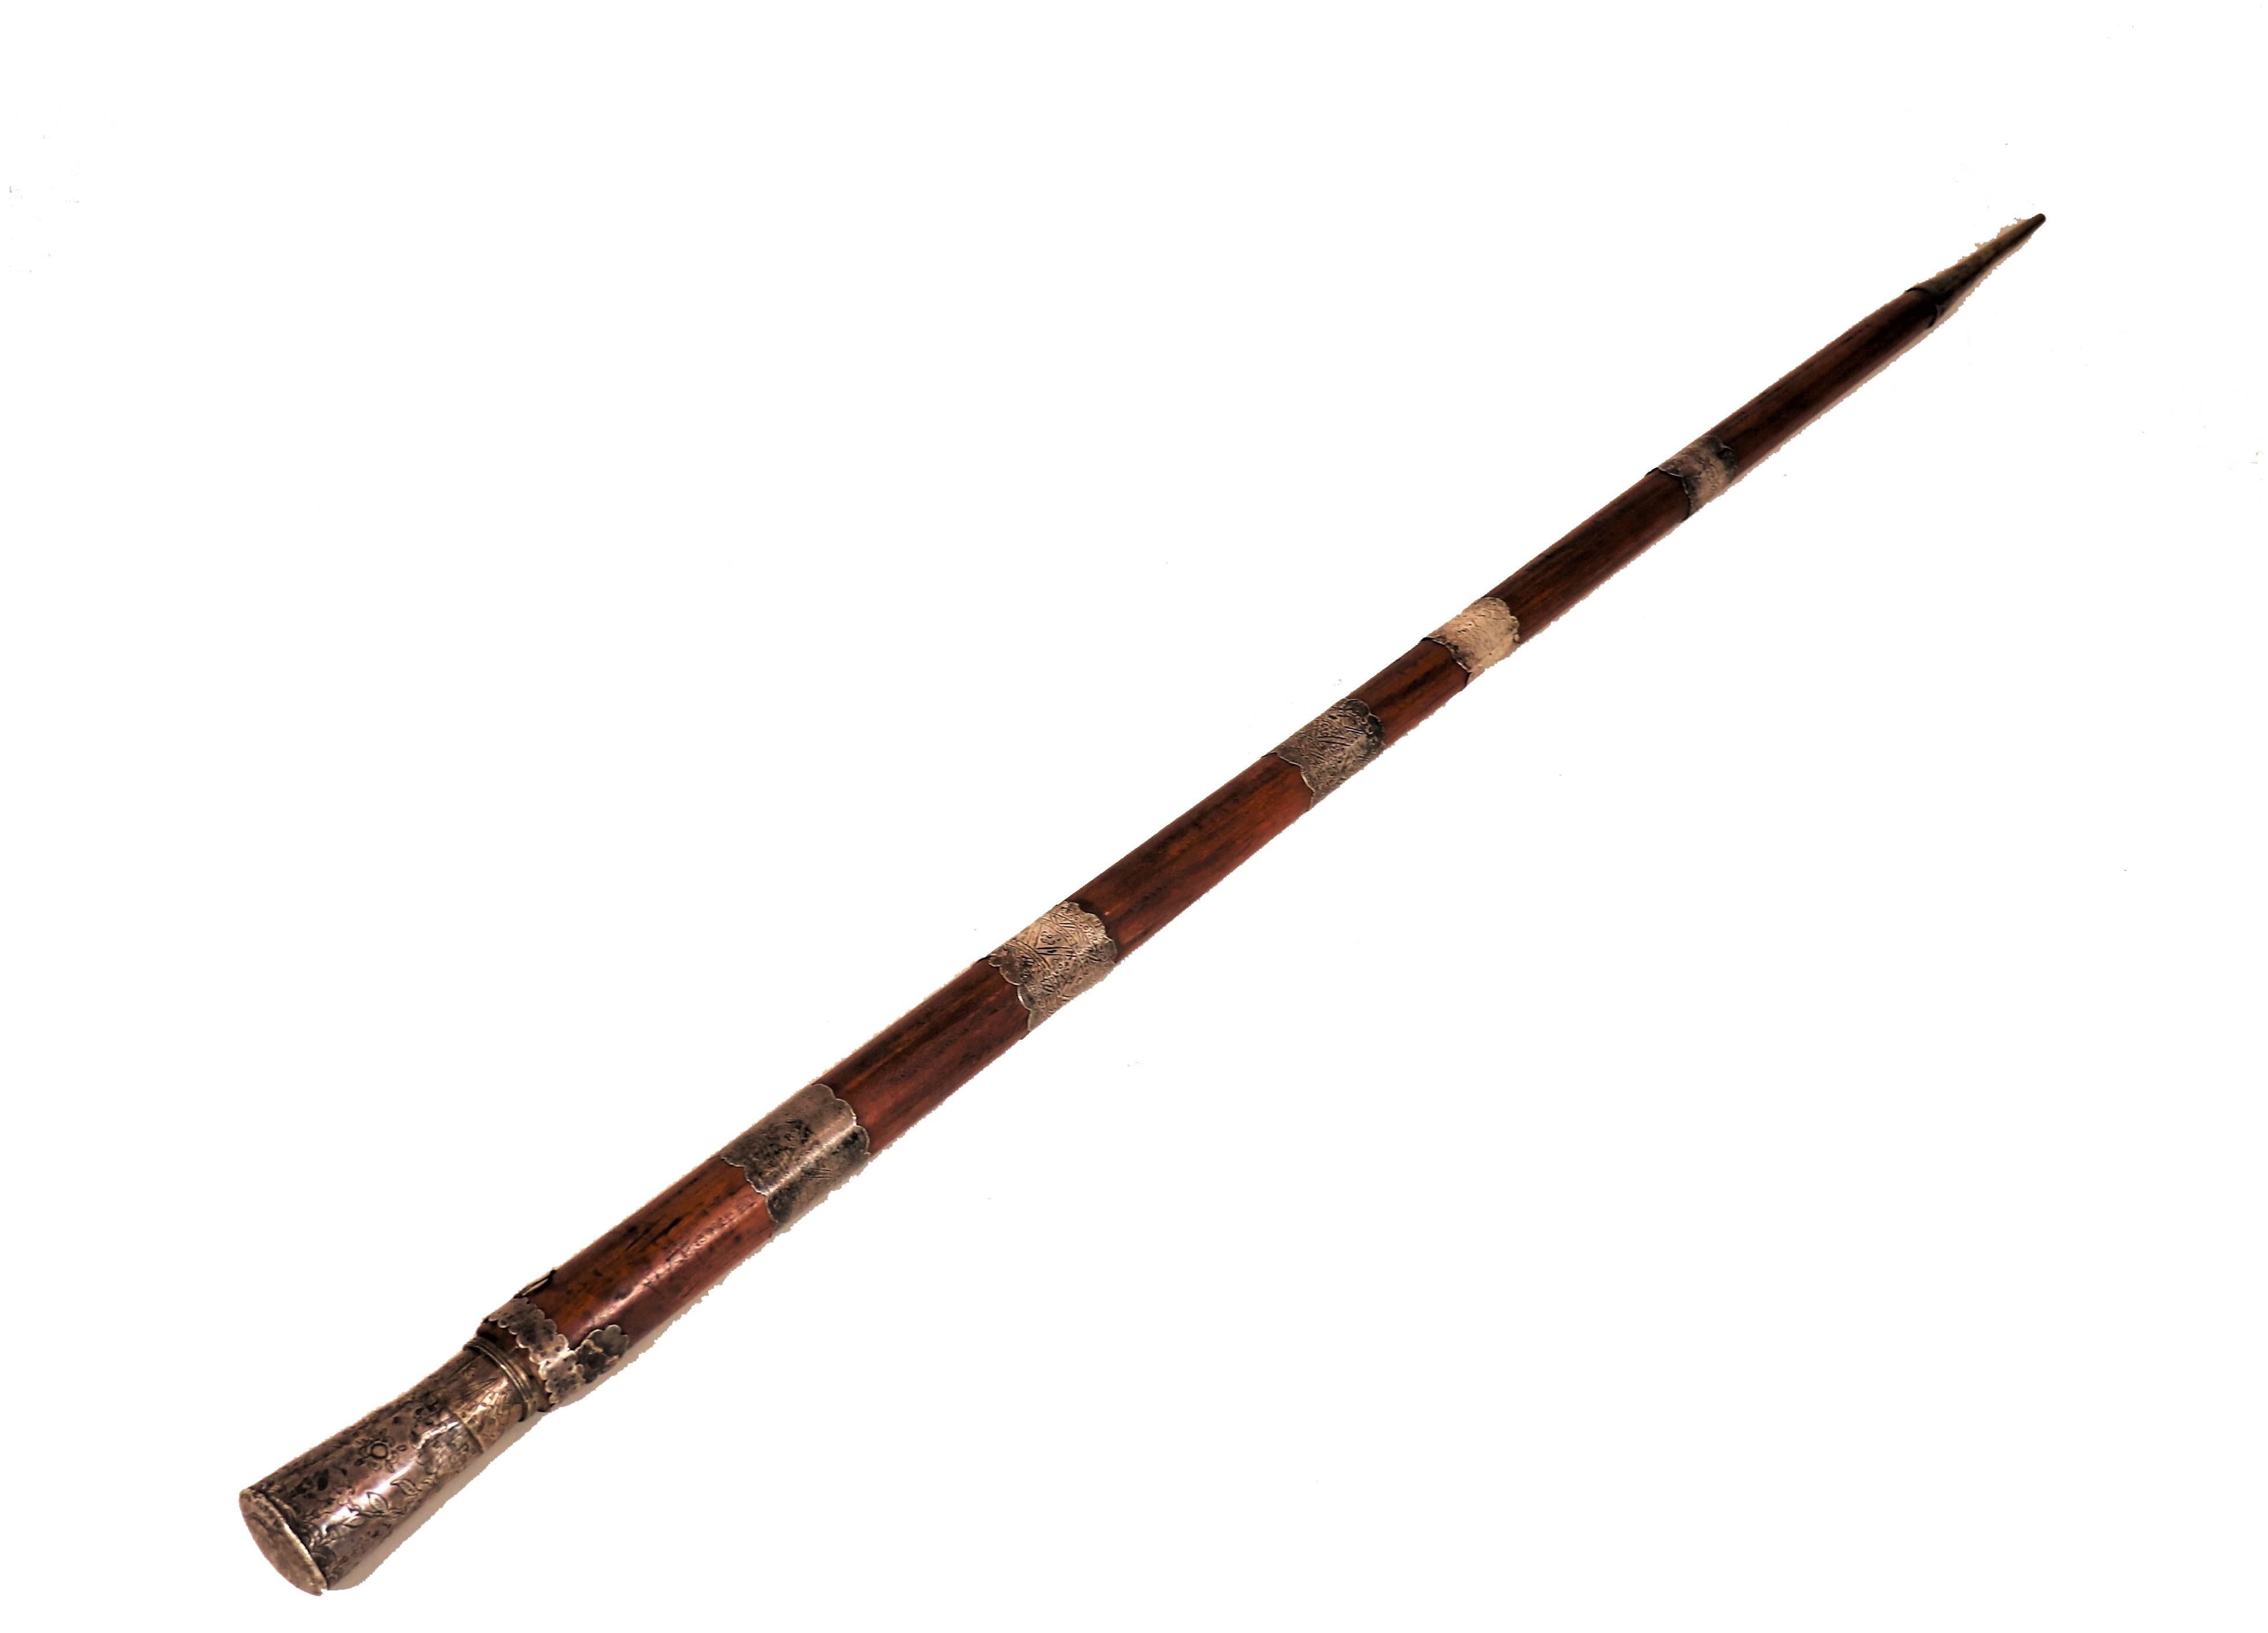 Ce bâton de randonnée autrichien unique a été fabriqué à la main en chêne massif. Le chêne est un matériau relativement léger mais robuste, qui se prête parfaitement à la fabrication d'un bâton de randonnée. De nombreux bâtons faits à la main ont